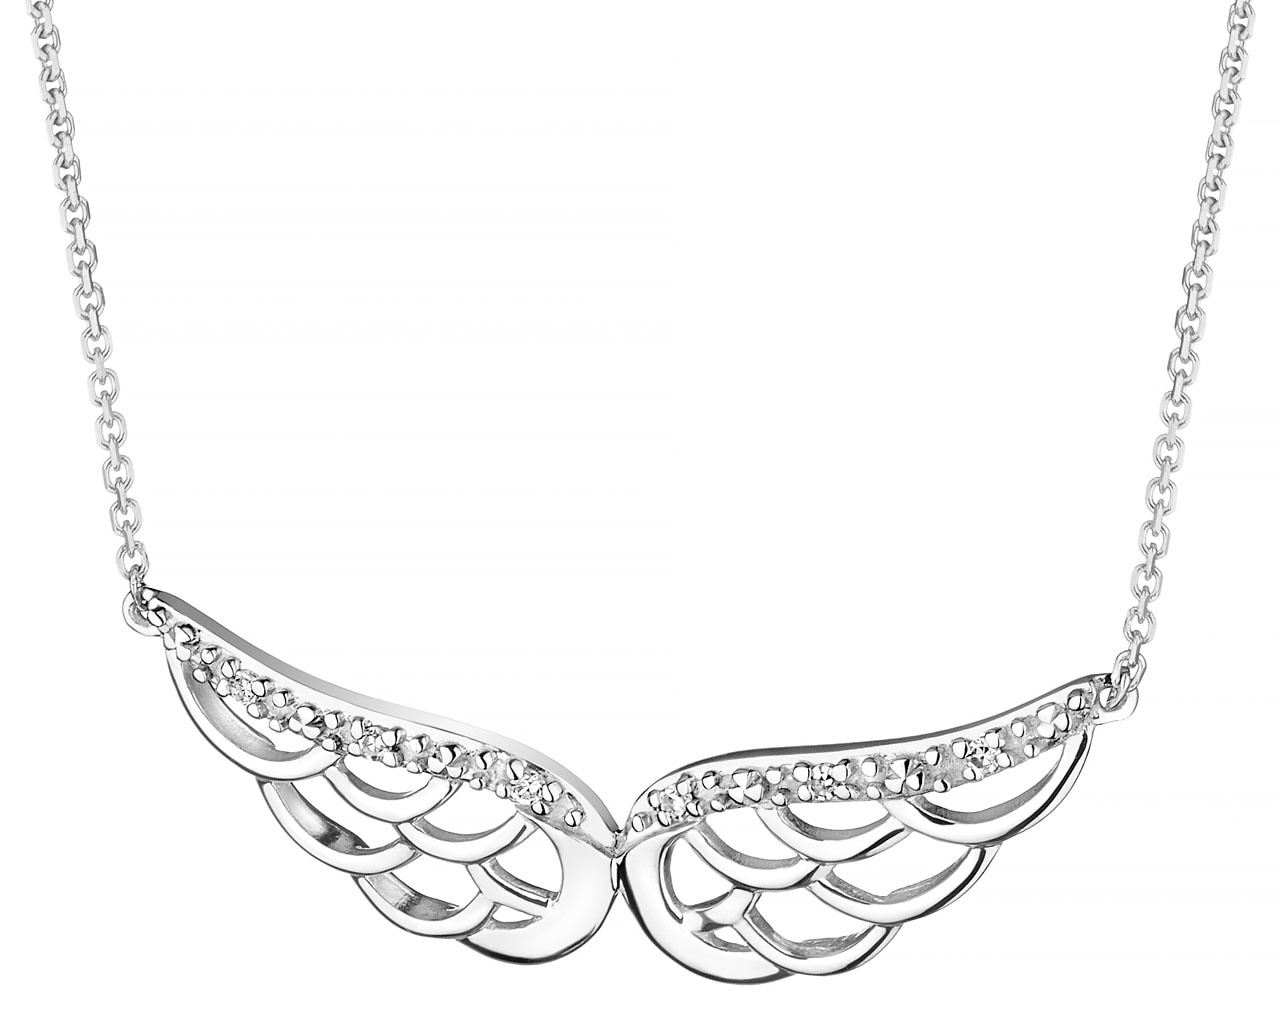 Naszyjnik z białego złota z diamentami - skrzydła anioła 0,02 ct - próba 585